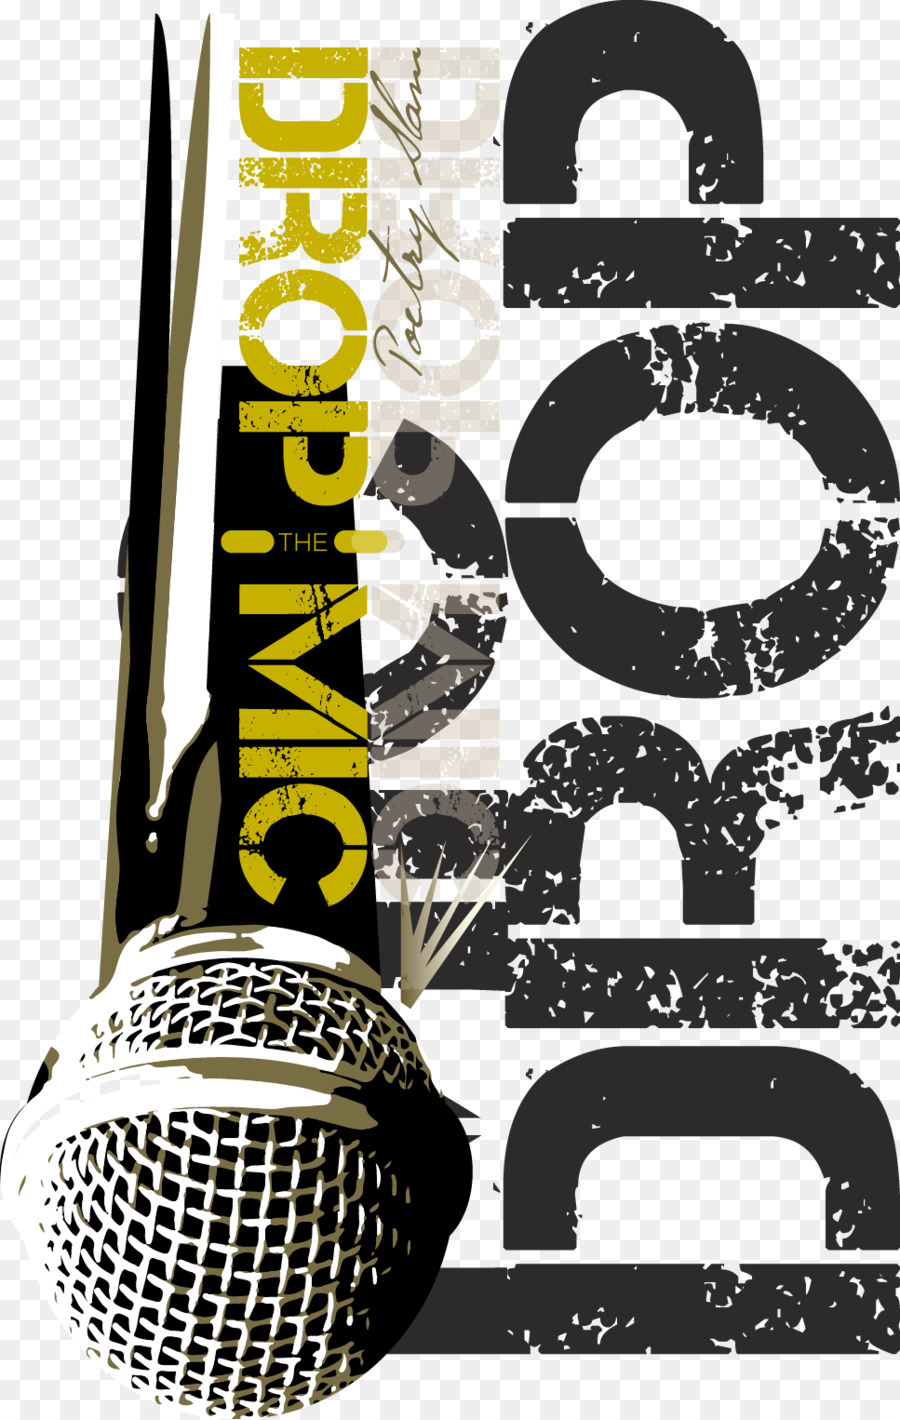 Mikrofon Poetry slam Spoken word Open mic - Mikrofon